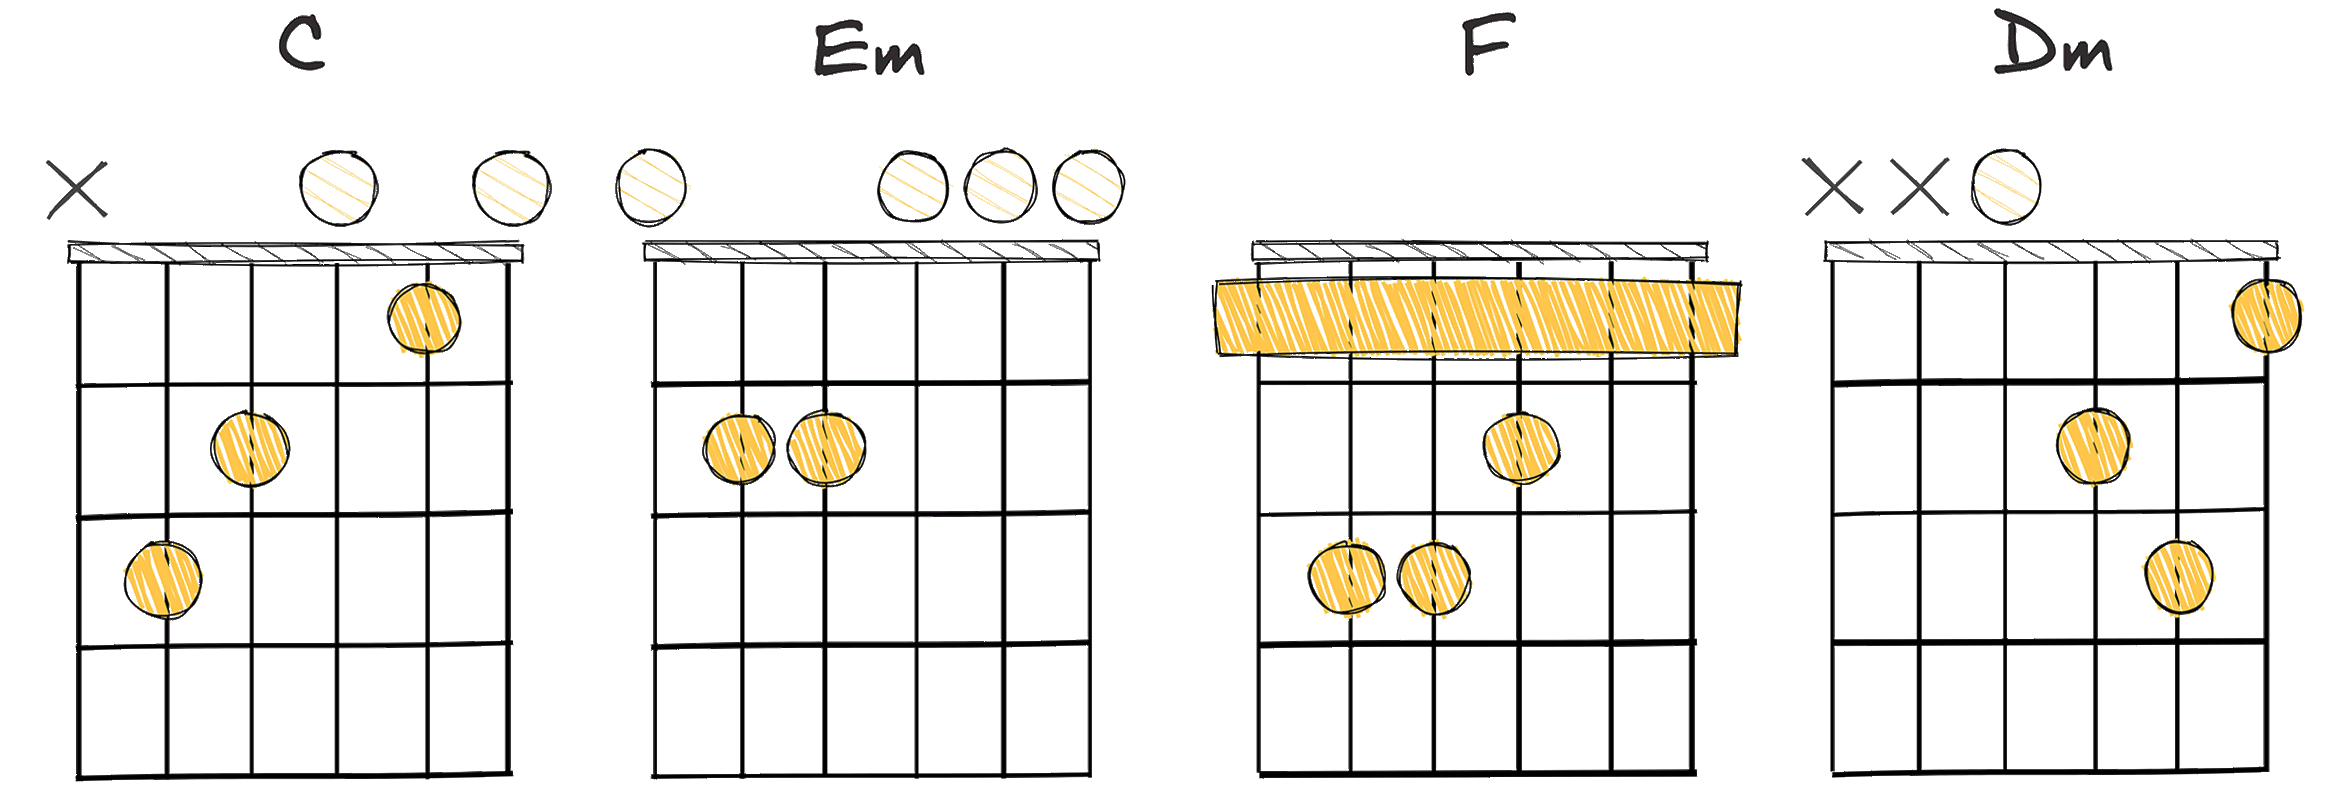 I-iii-IV-ii (1-3-4-2) chords diagram